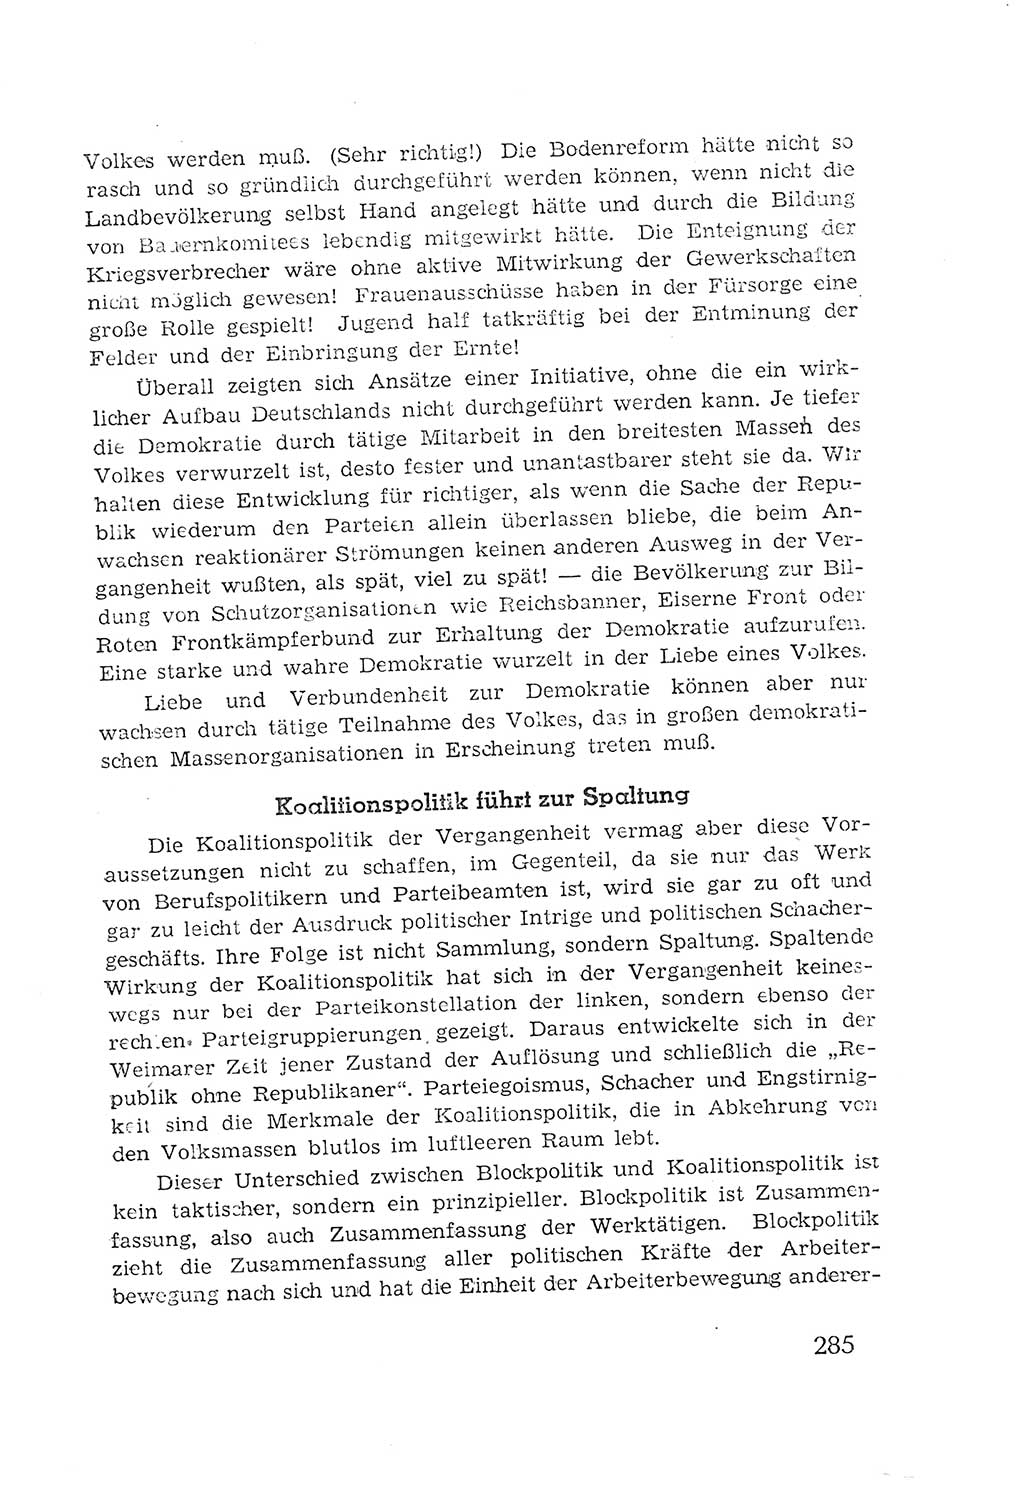 Protokoll der Verhandlungen des 2. Parteitages der Sozialistischen Einheitspartei Deutschlands (SED) [Sowjetische Besatzungszone (SBZ) Deutschlands] 1947, Seite 285 (Prot. Verh. 2. PT SED SBZ Dtl. 1947, S. 285)